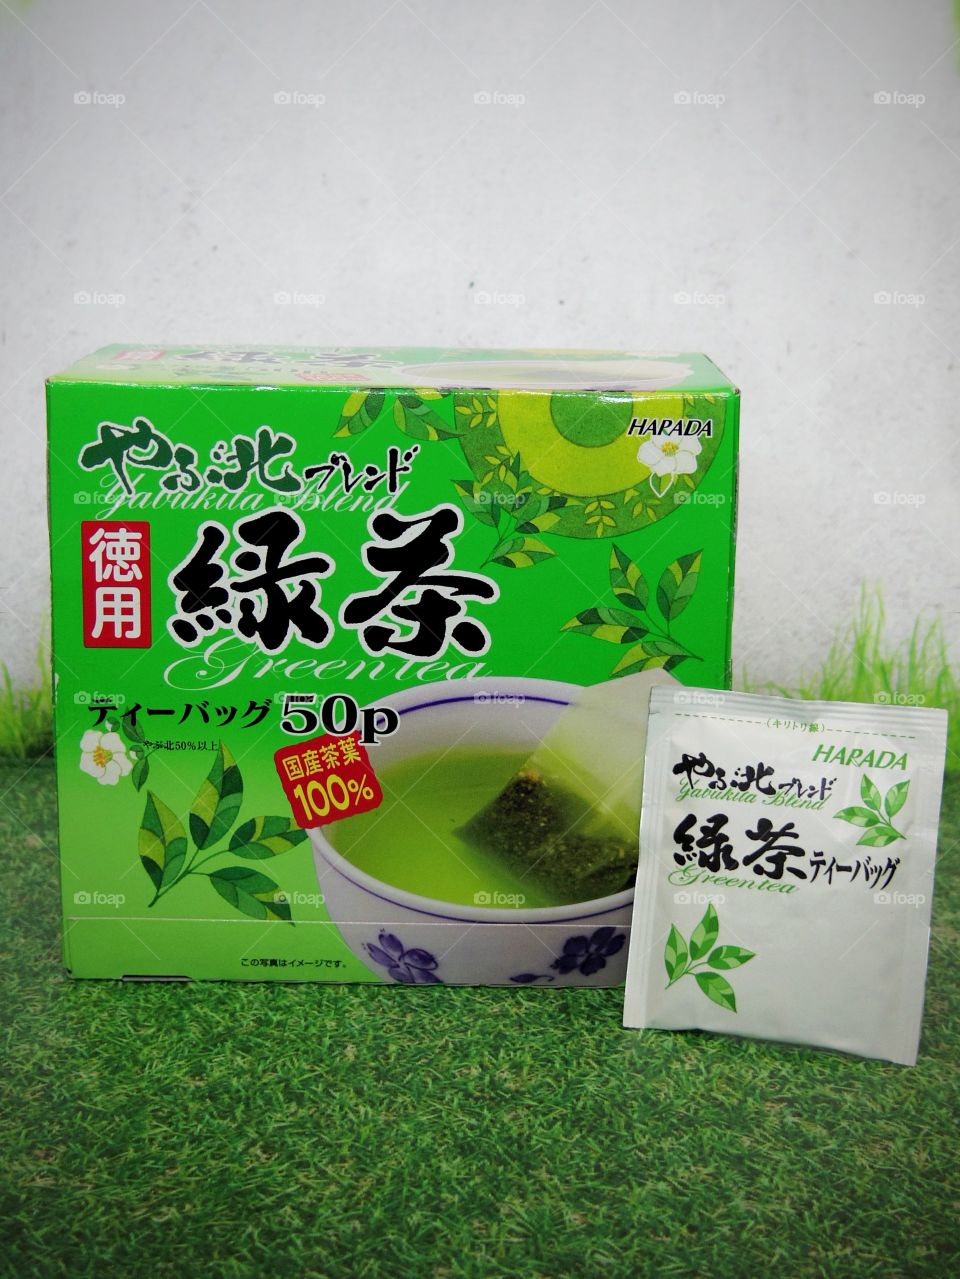 Japanese Green Tea is my favorite drink